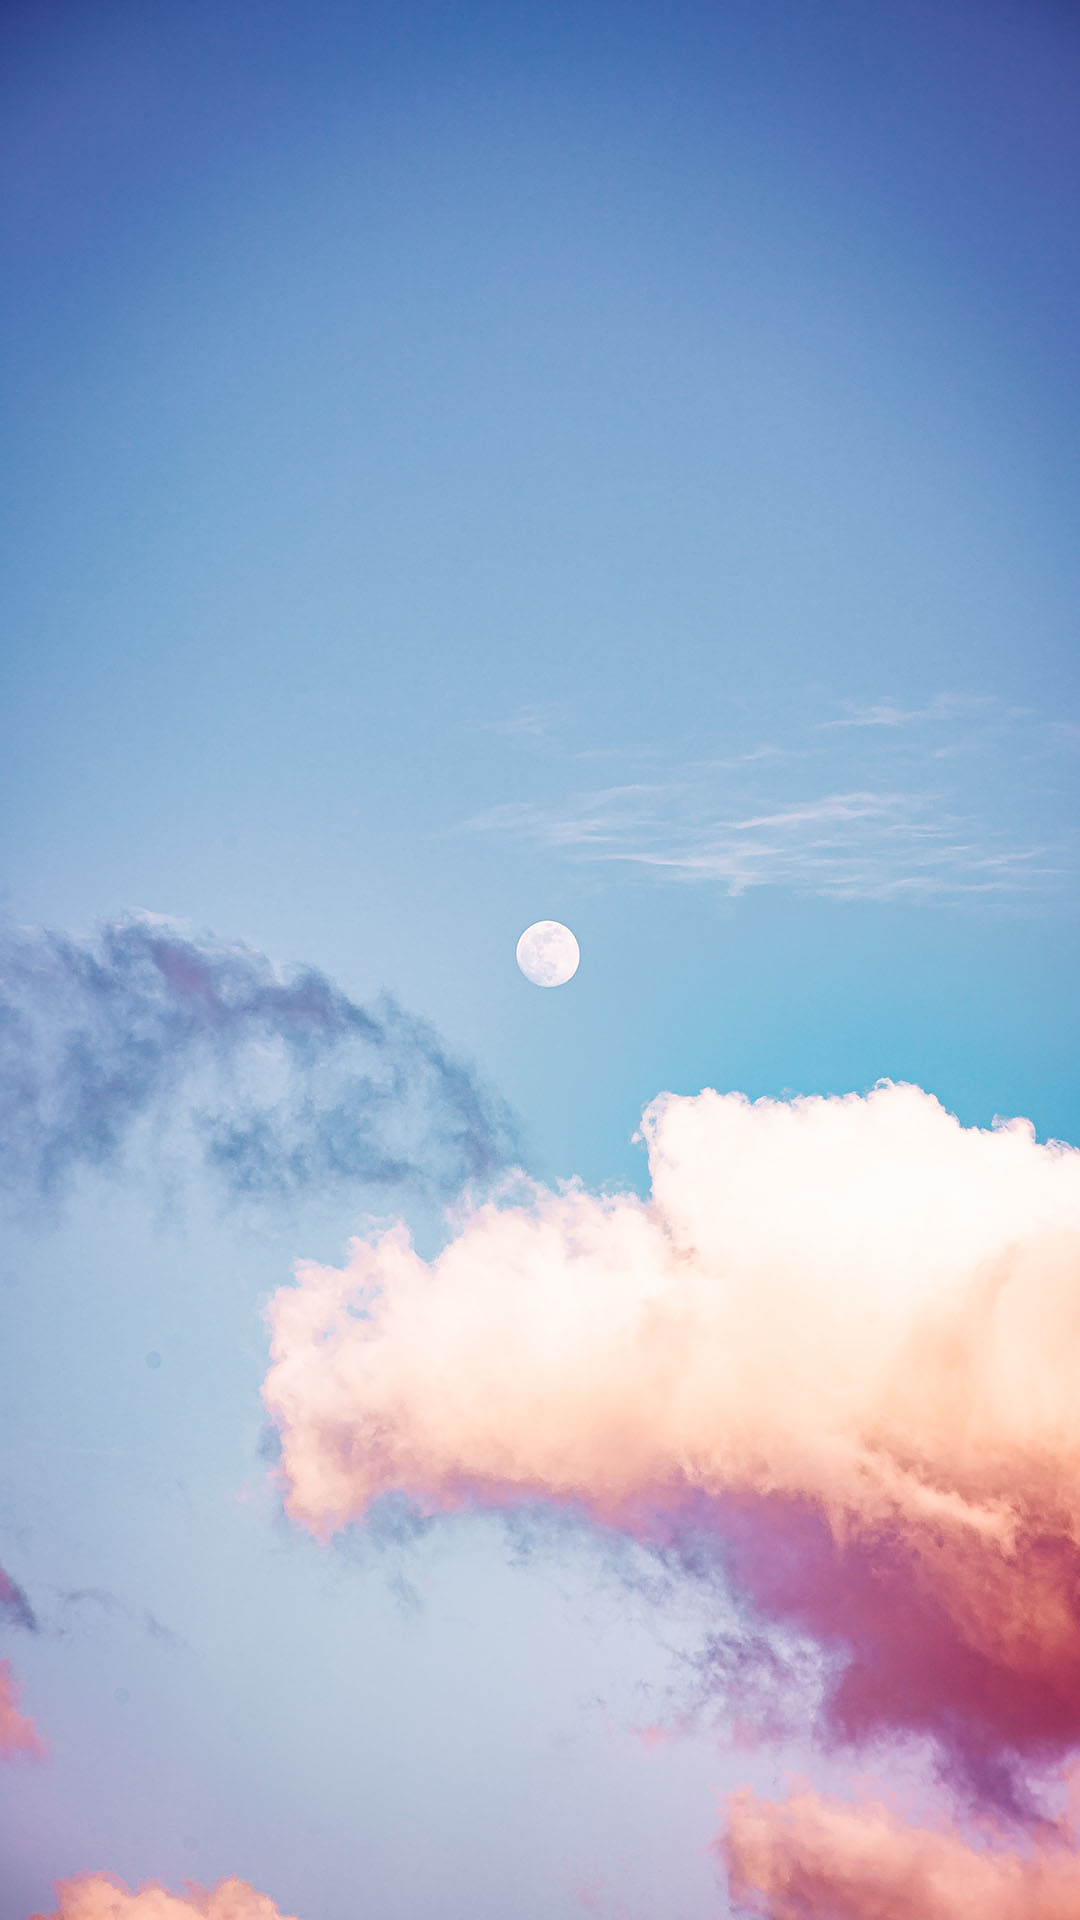 Những khoảnh khắc cảm nhận được thiên nhiên trong ảnh Background Mây Đẹp sẽ khiến bạn cảm thấy yên bình và thăng hoa tinh thần. Đắm chìm trong vẻ đẹp tuyệt vời của thiên nhiên, và để phong cảnh mây đưa bạn vào một thế giới mới.